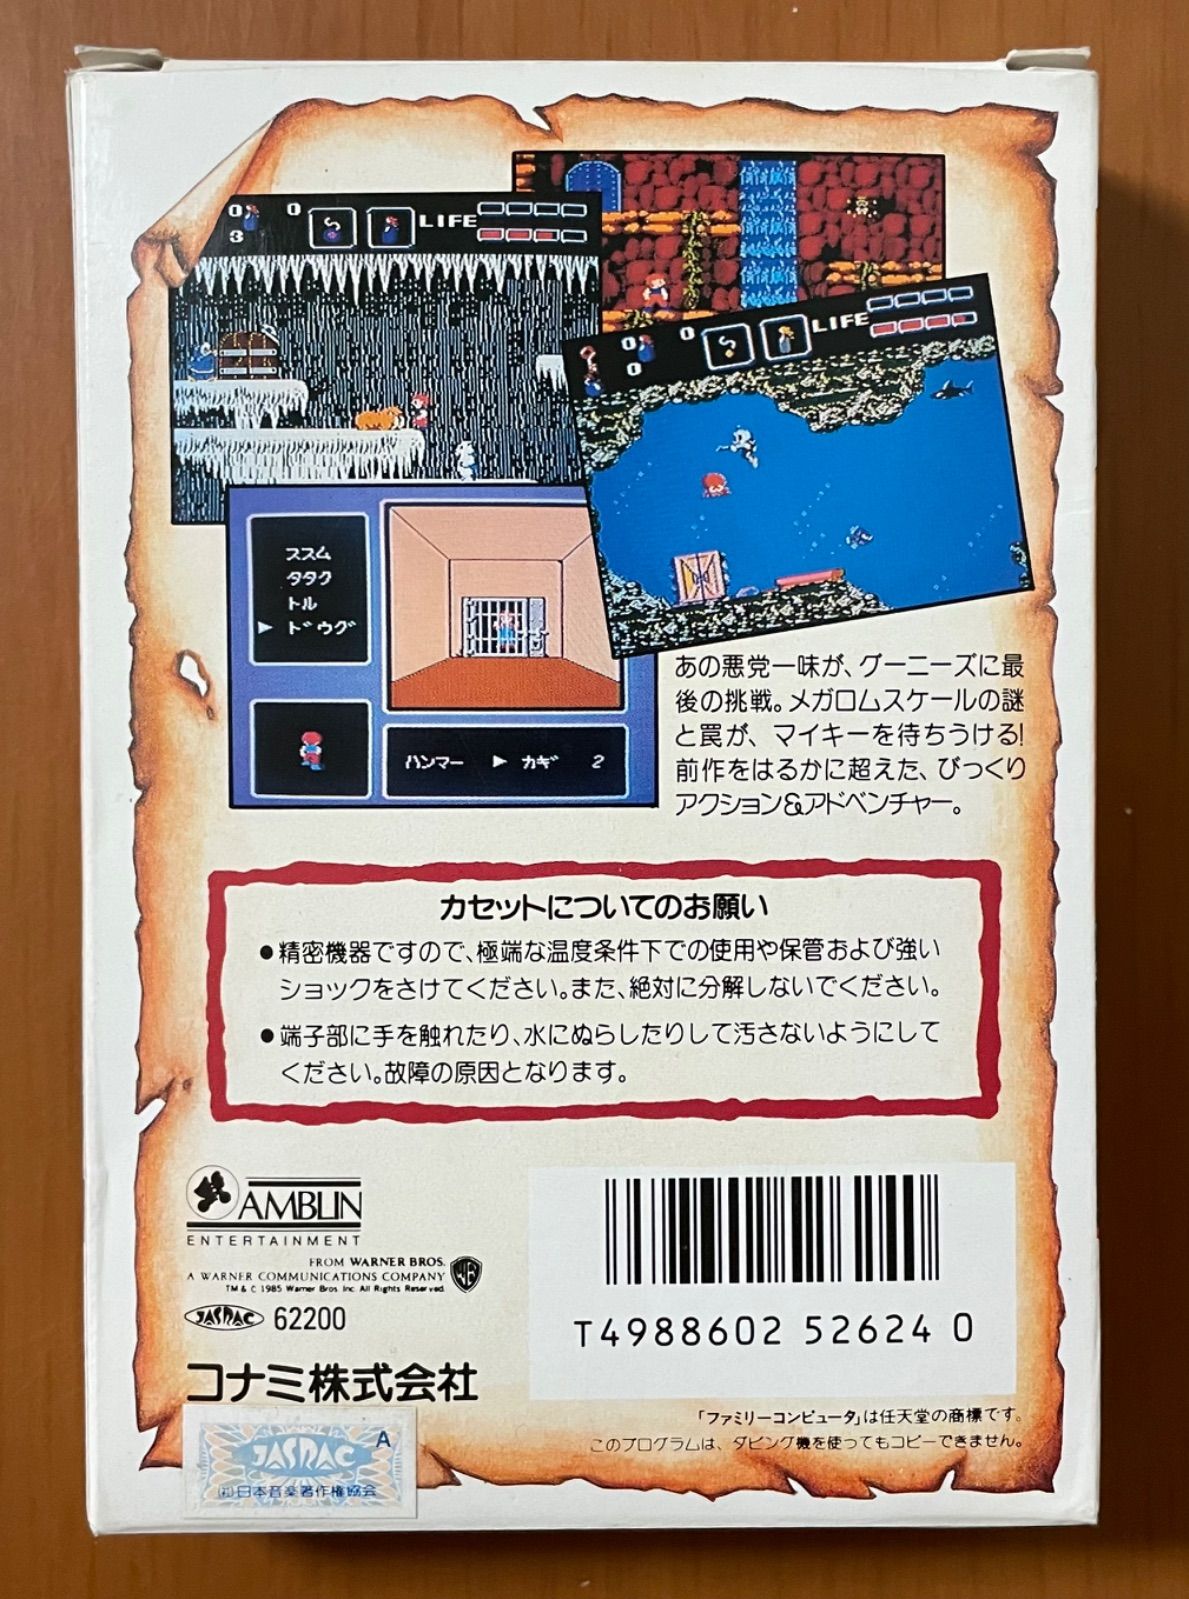 KONAMI グーニーズ2 フラッテリー最後の挑戦 ファミコンソフト - メルカリ